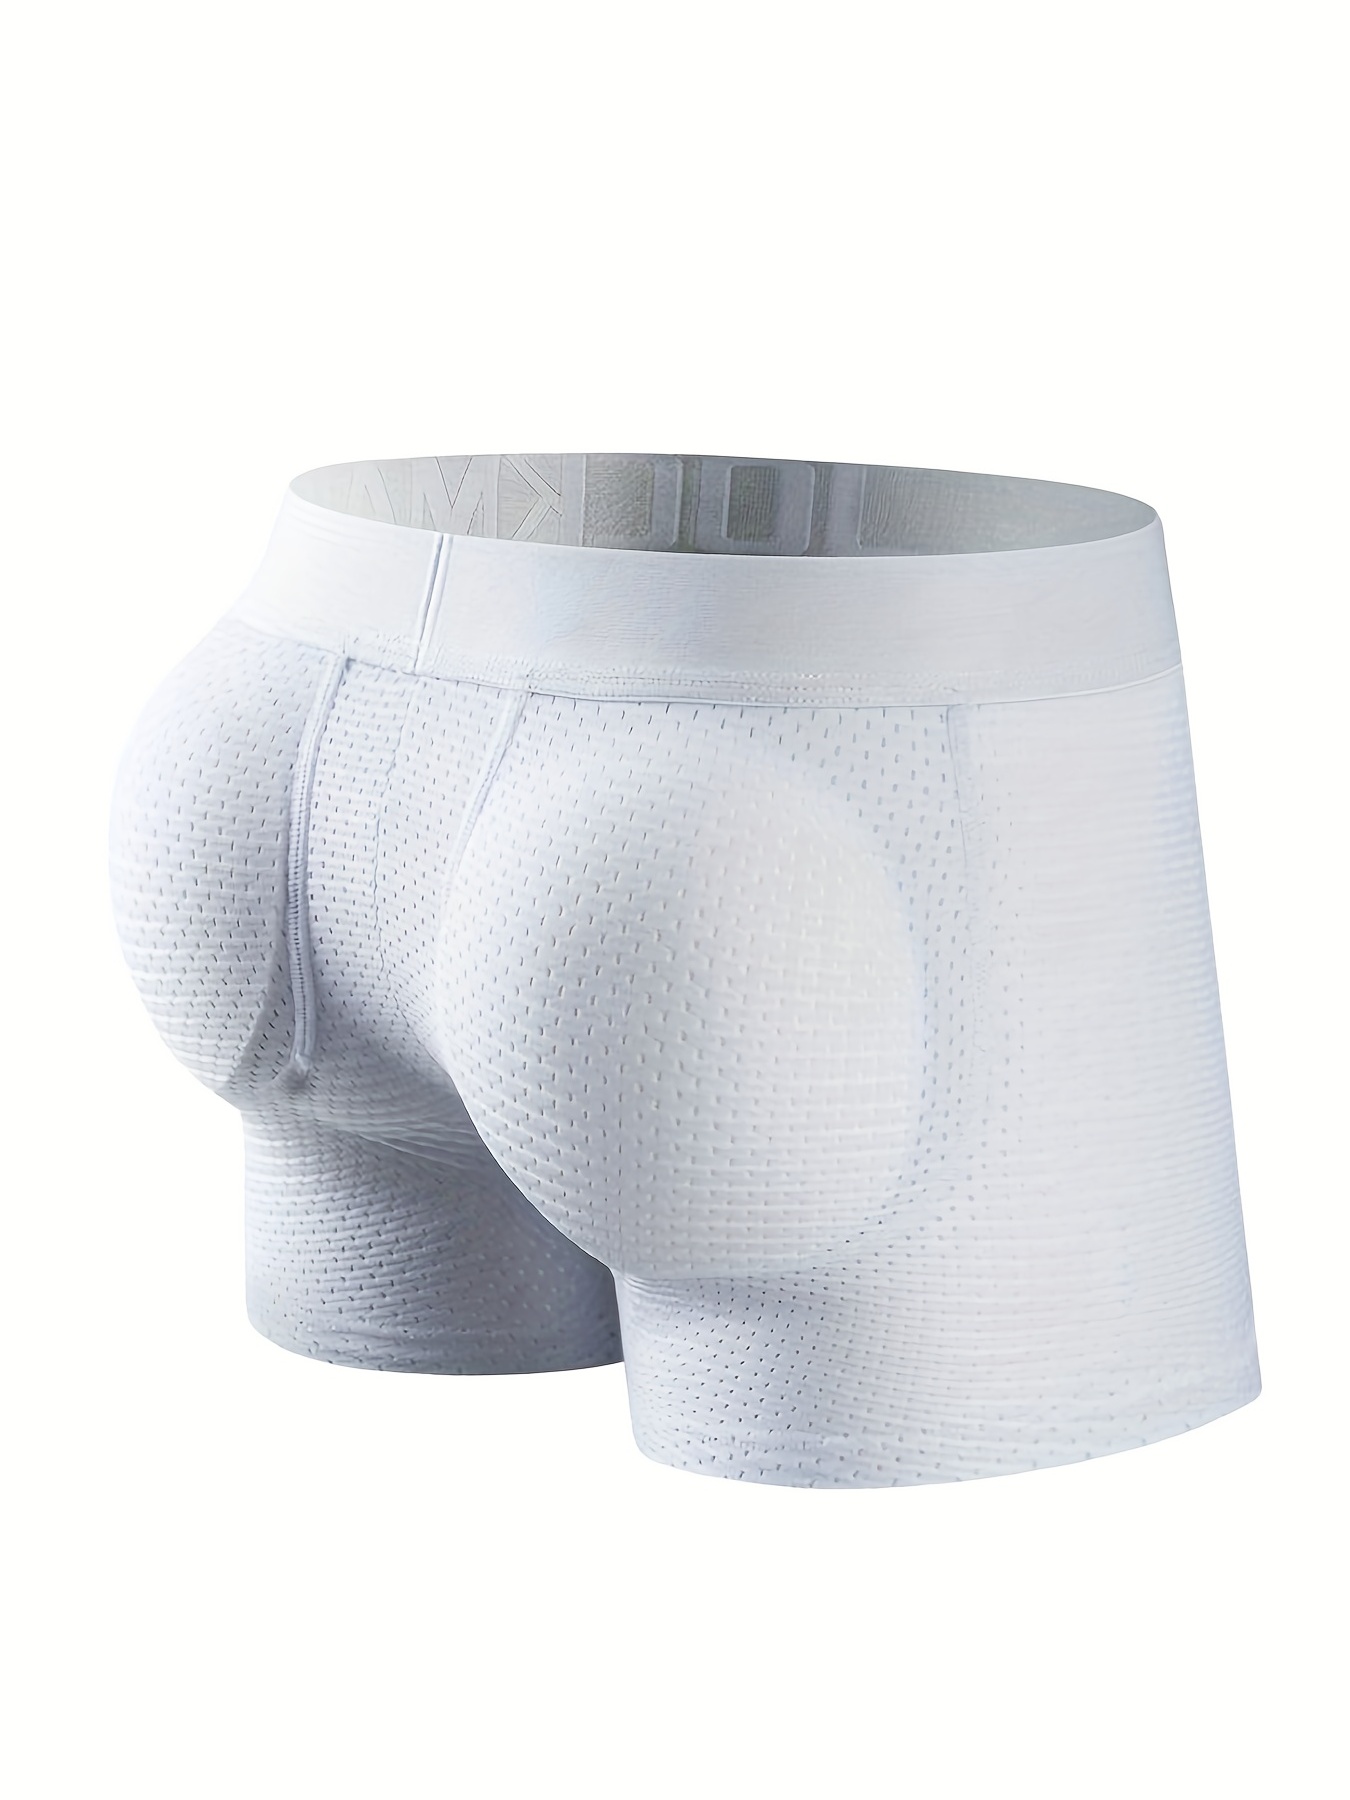 Jockmail Men's Briefs Comfortable Bulge Pouch Cotton Soft - Temu Canada